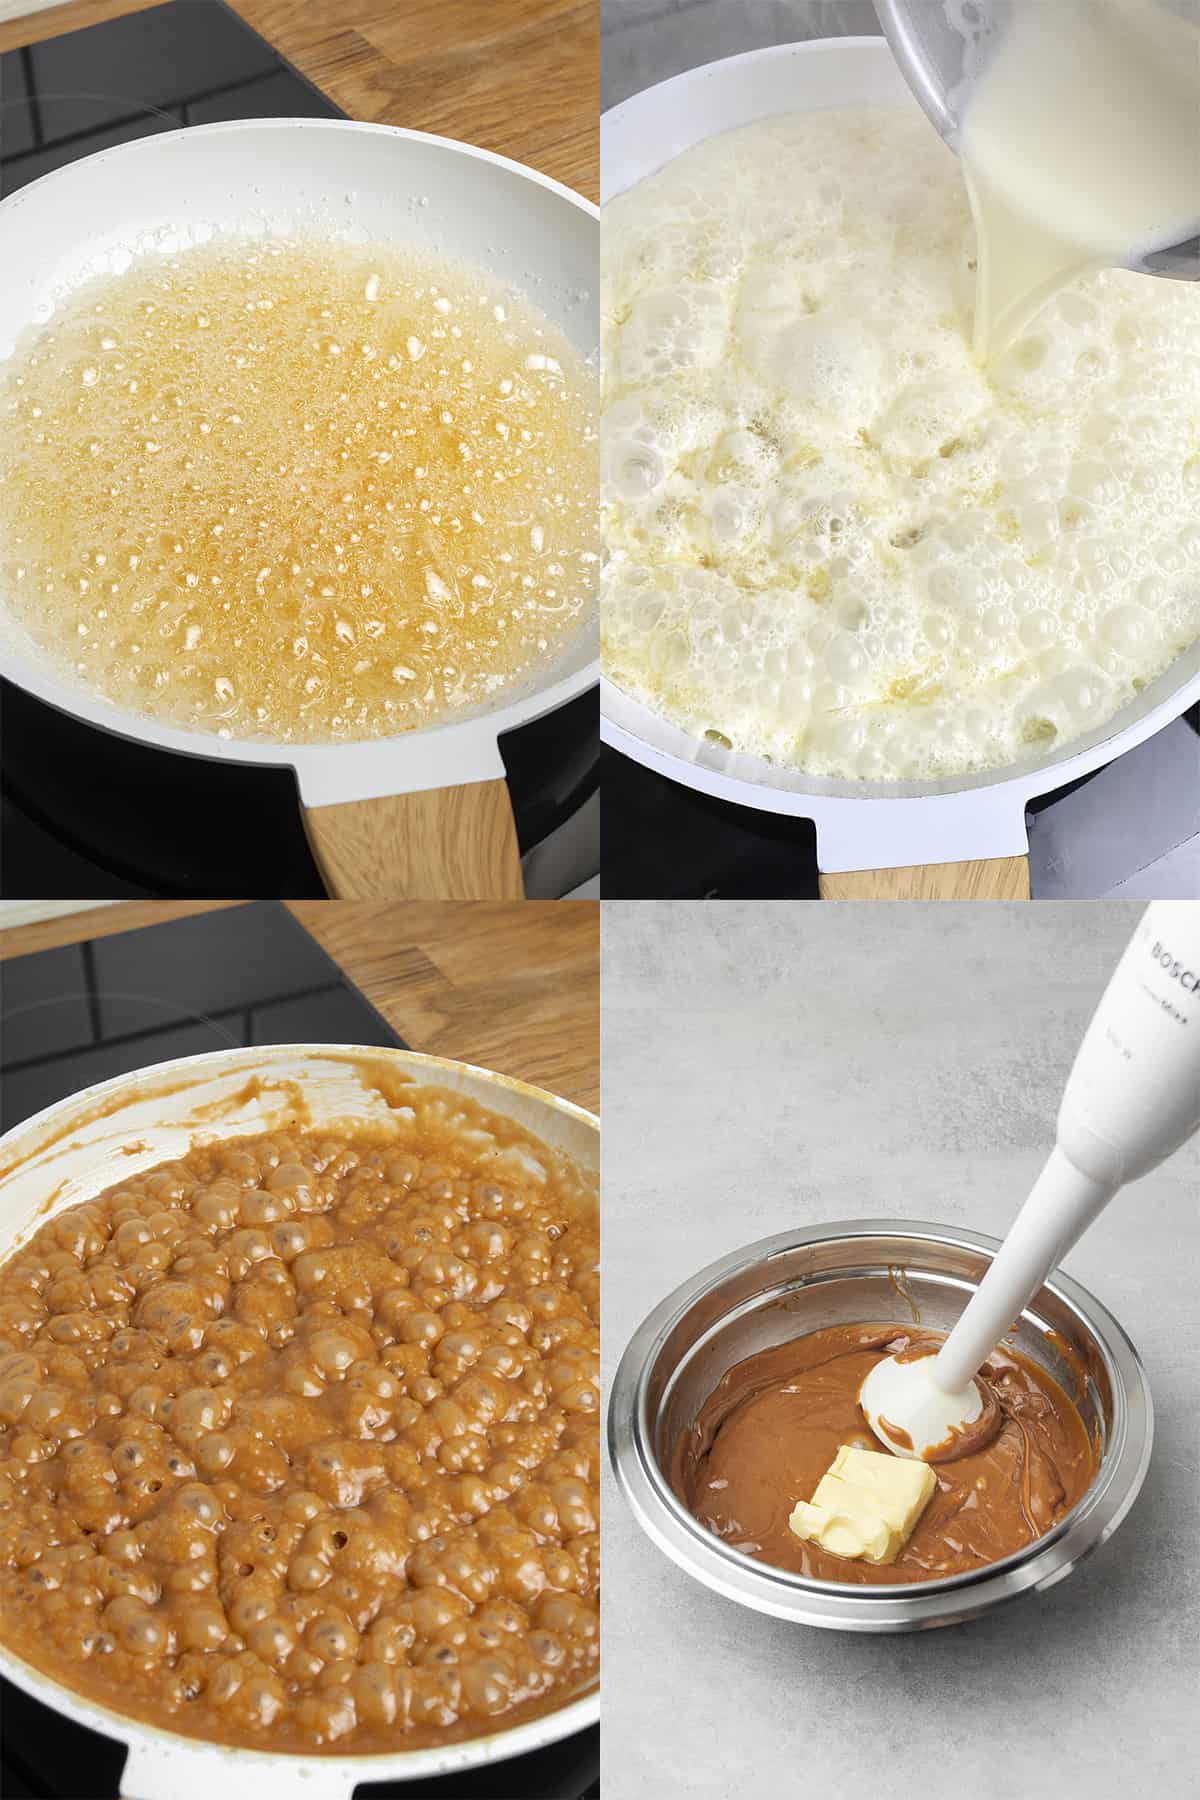 Caramel process.